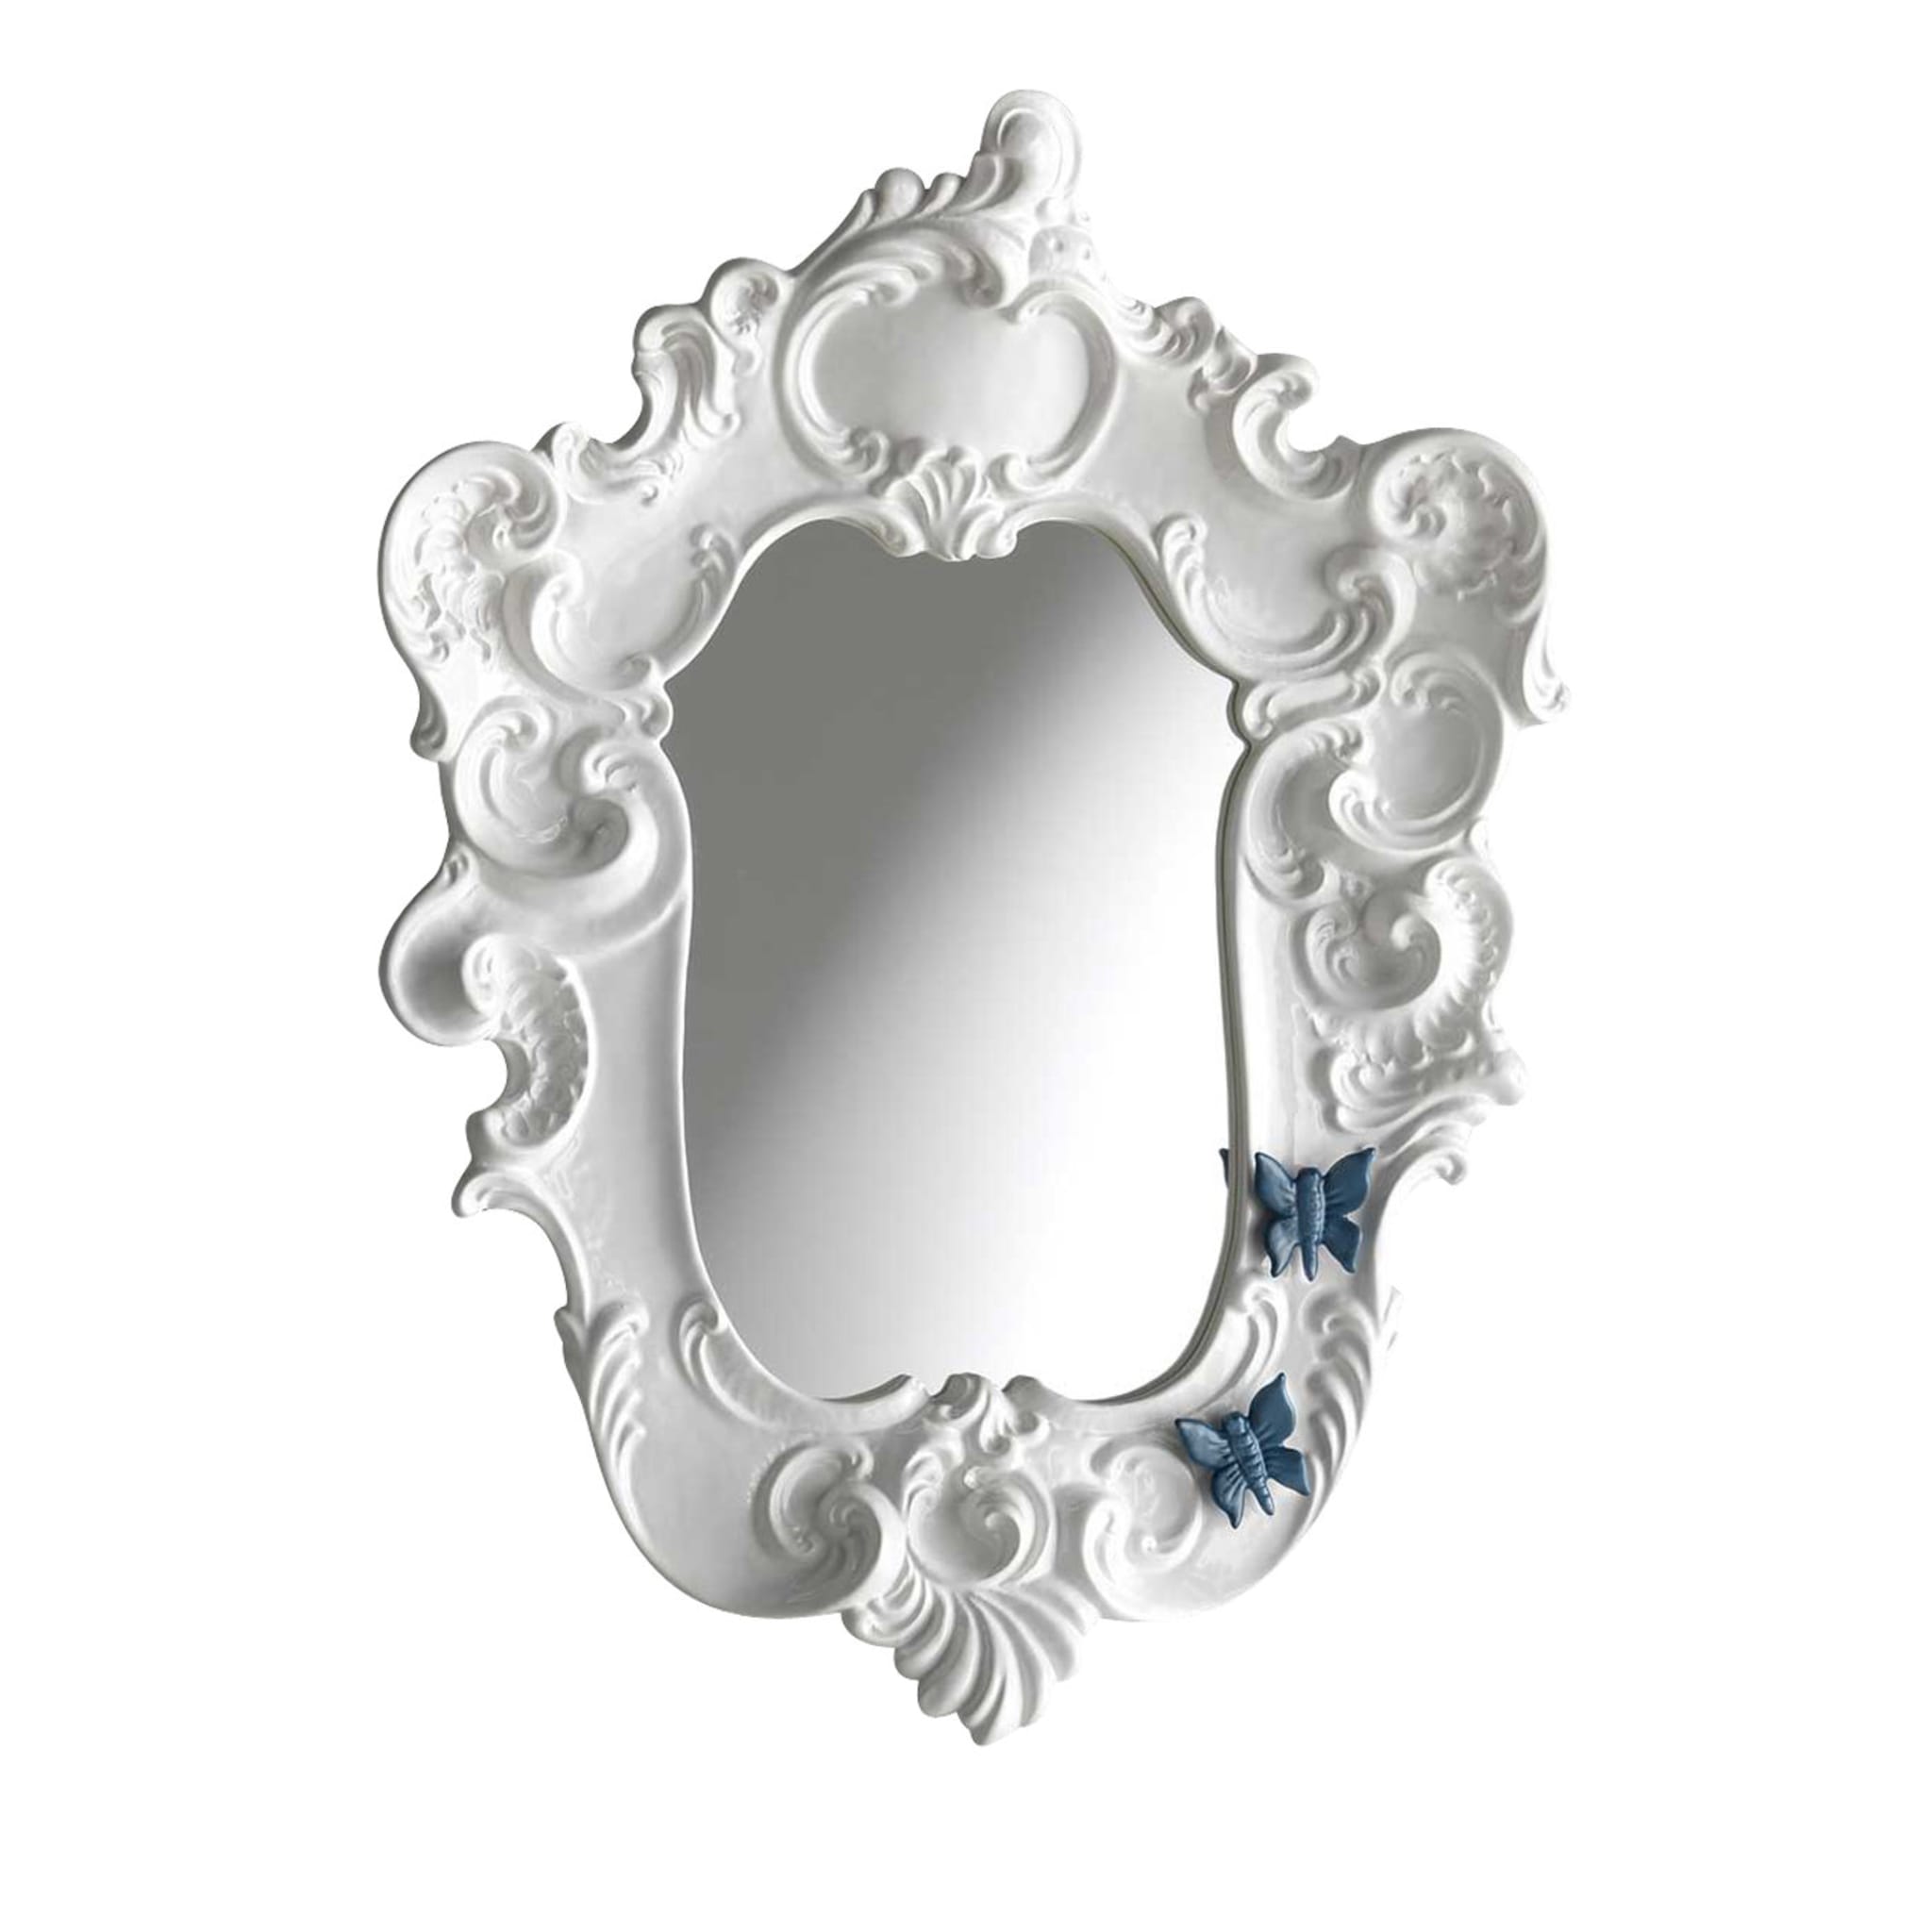 Miroir papillon blanc de style baroque - Vue principale